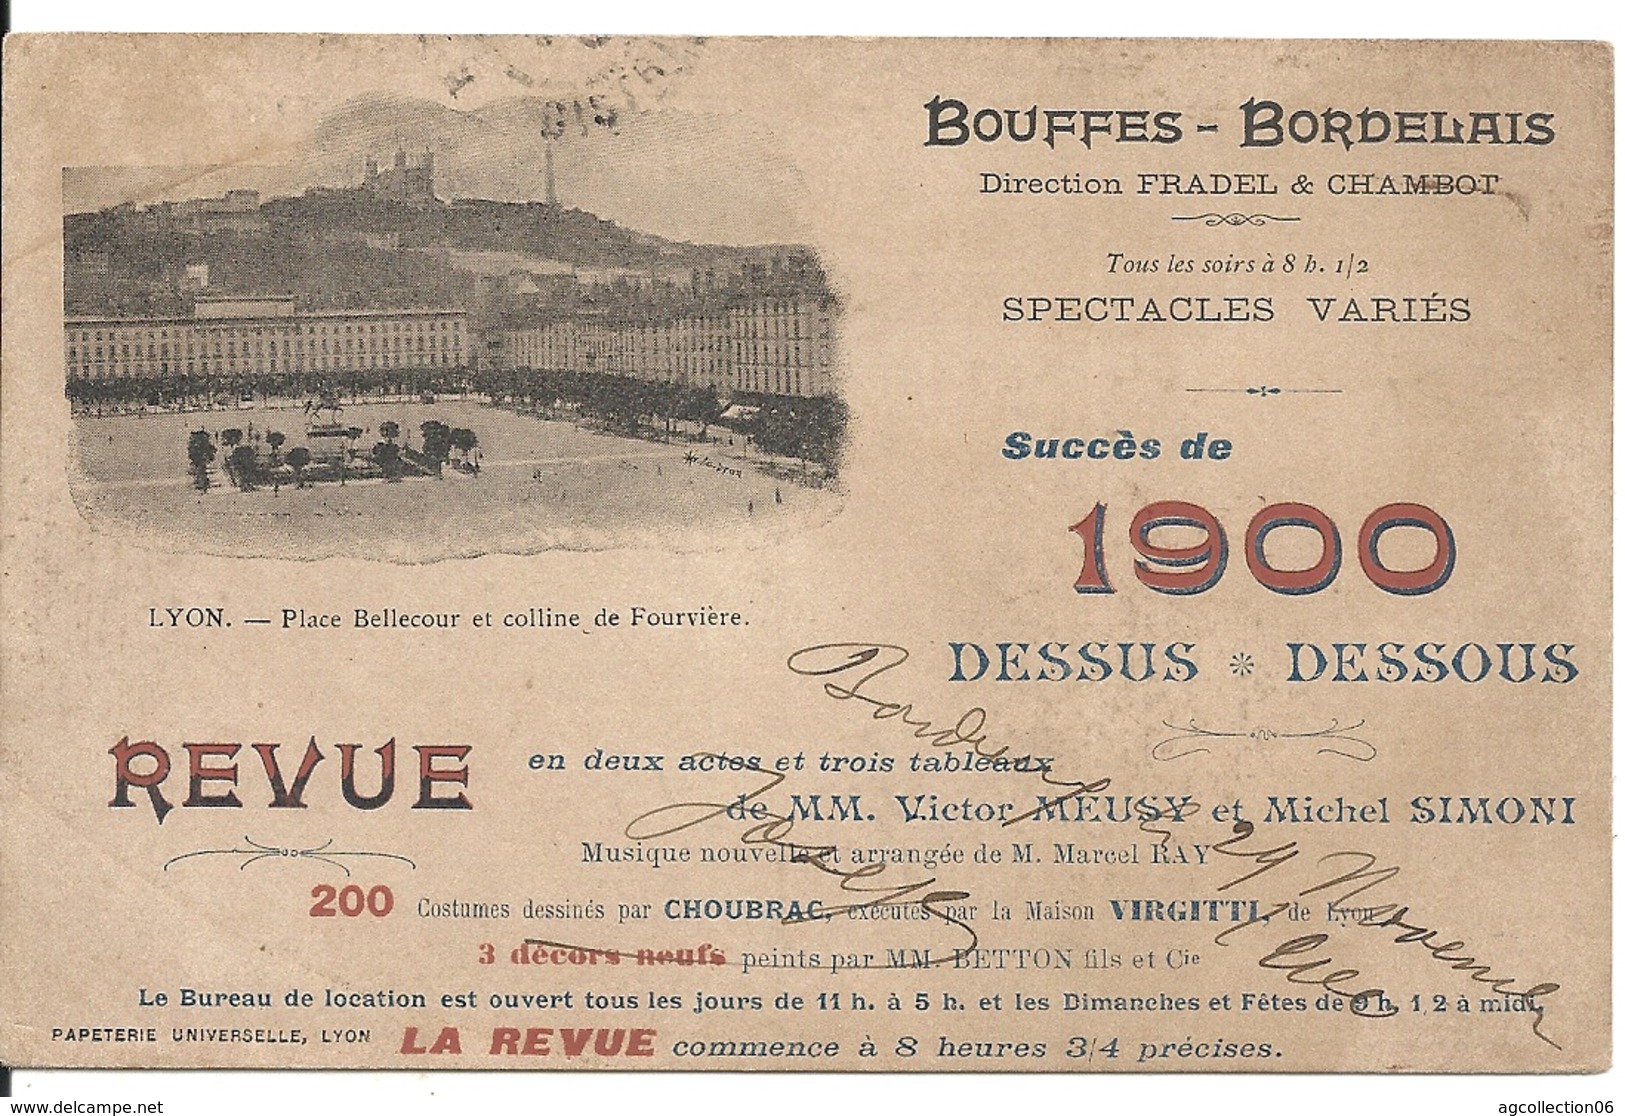 PUBLICITE "DESSUS DESSOUS", REVUE EN 2 ACTES ET 3 TABLEAUX. BOUFFES BORDELAIS - Theatre